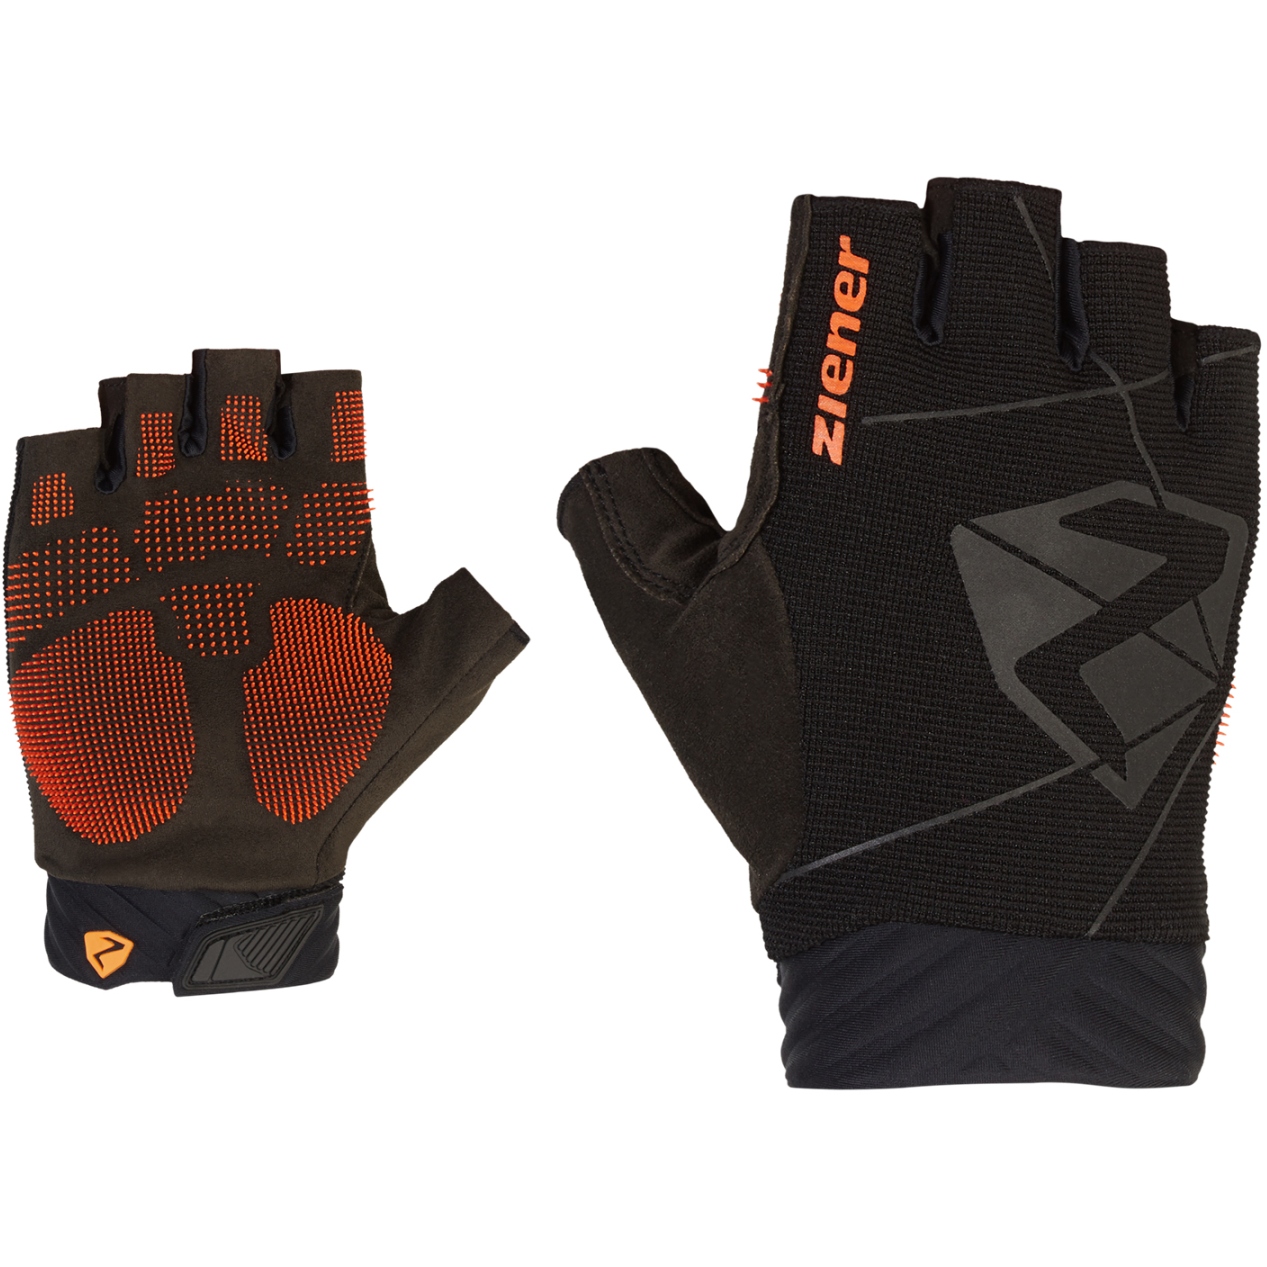 Productfoto van Ziener Cecko Bike Handschoenen - zwart